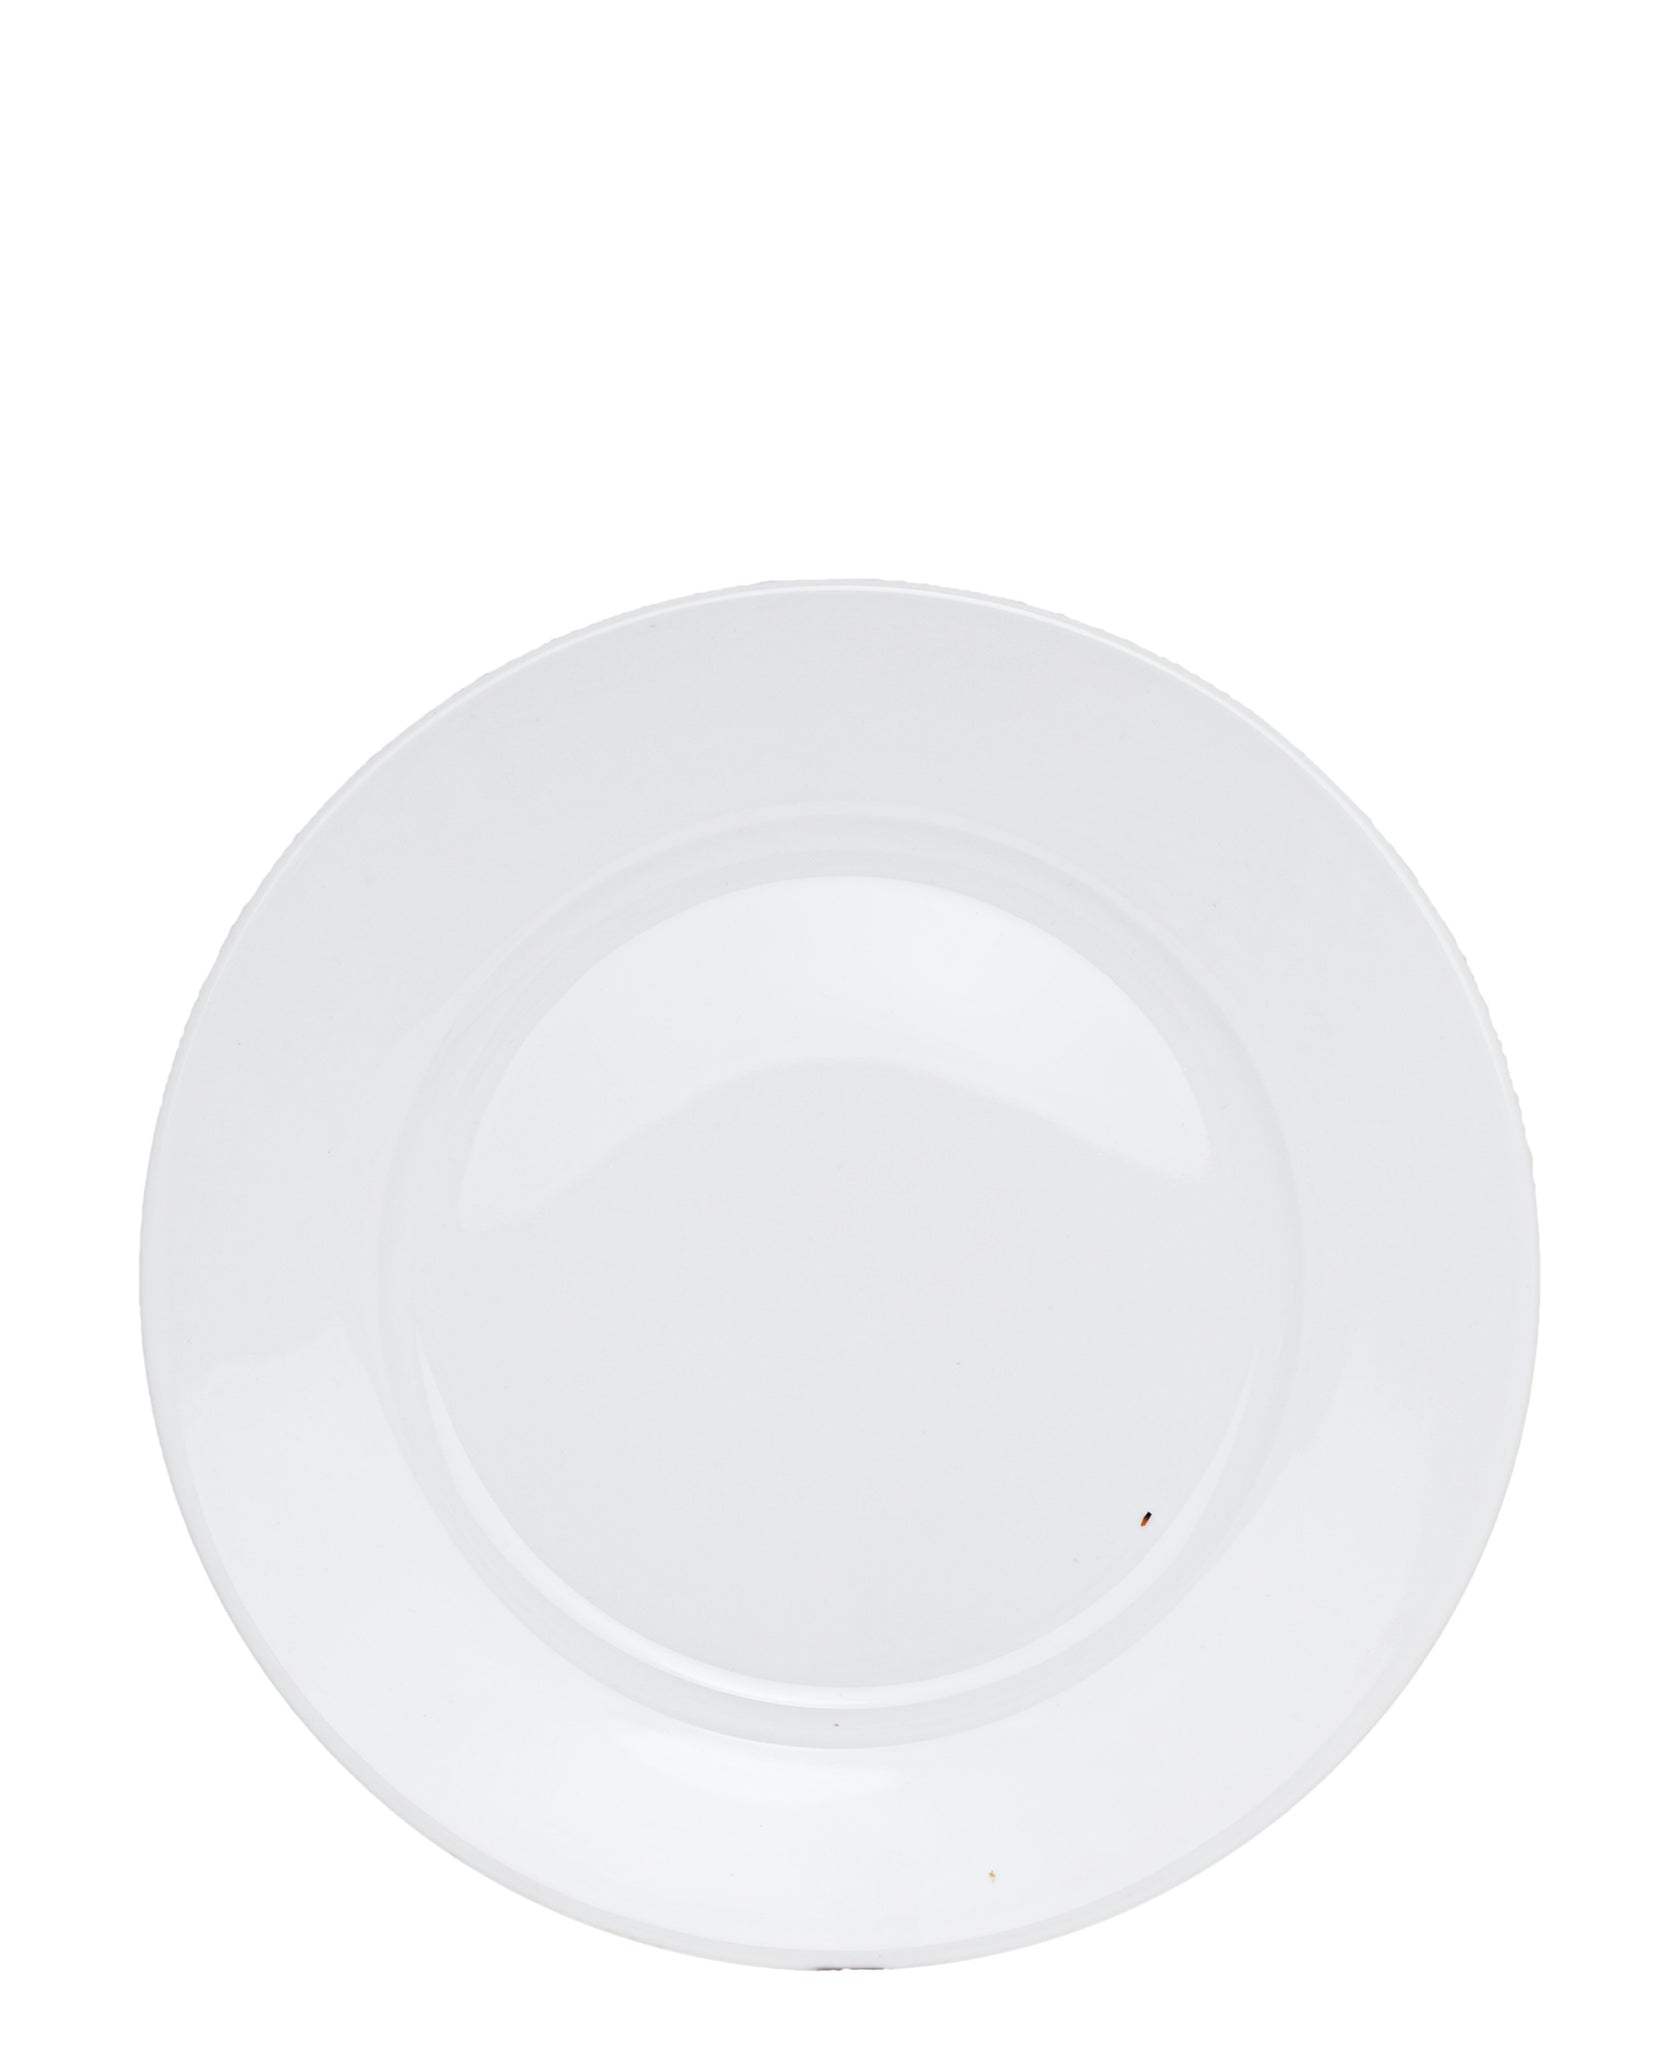 Eetrite Rim Dinner Plate 27cm - White